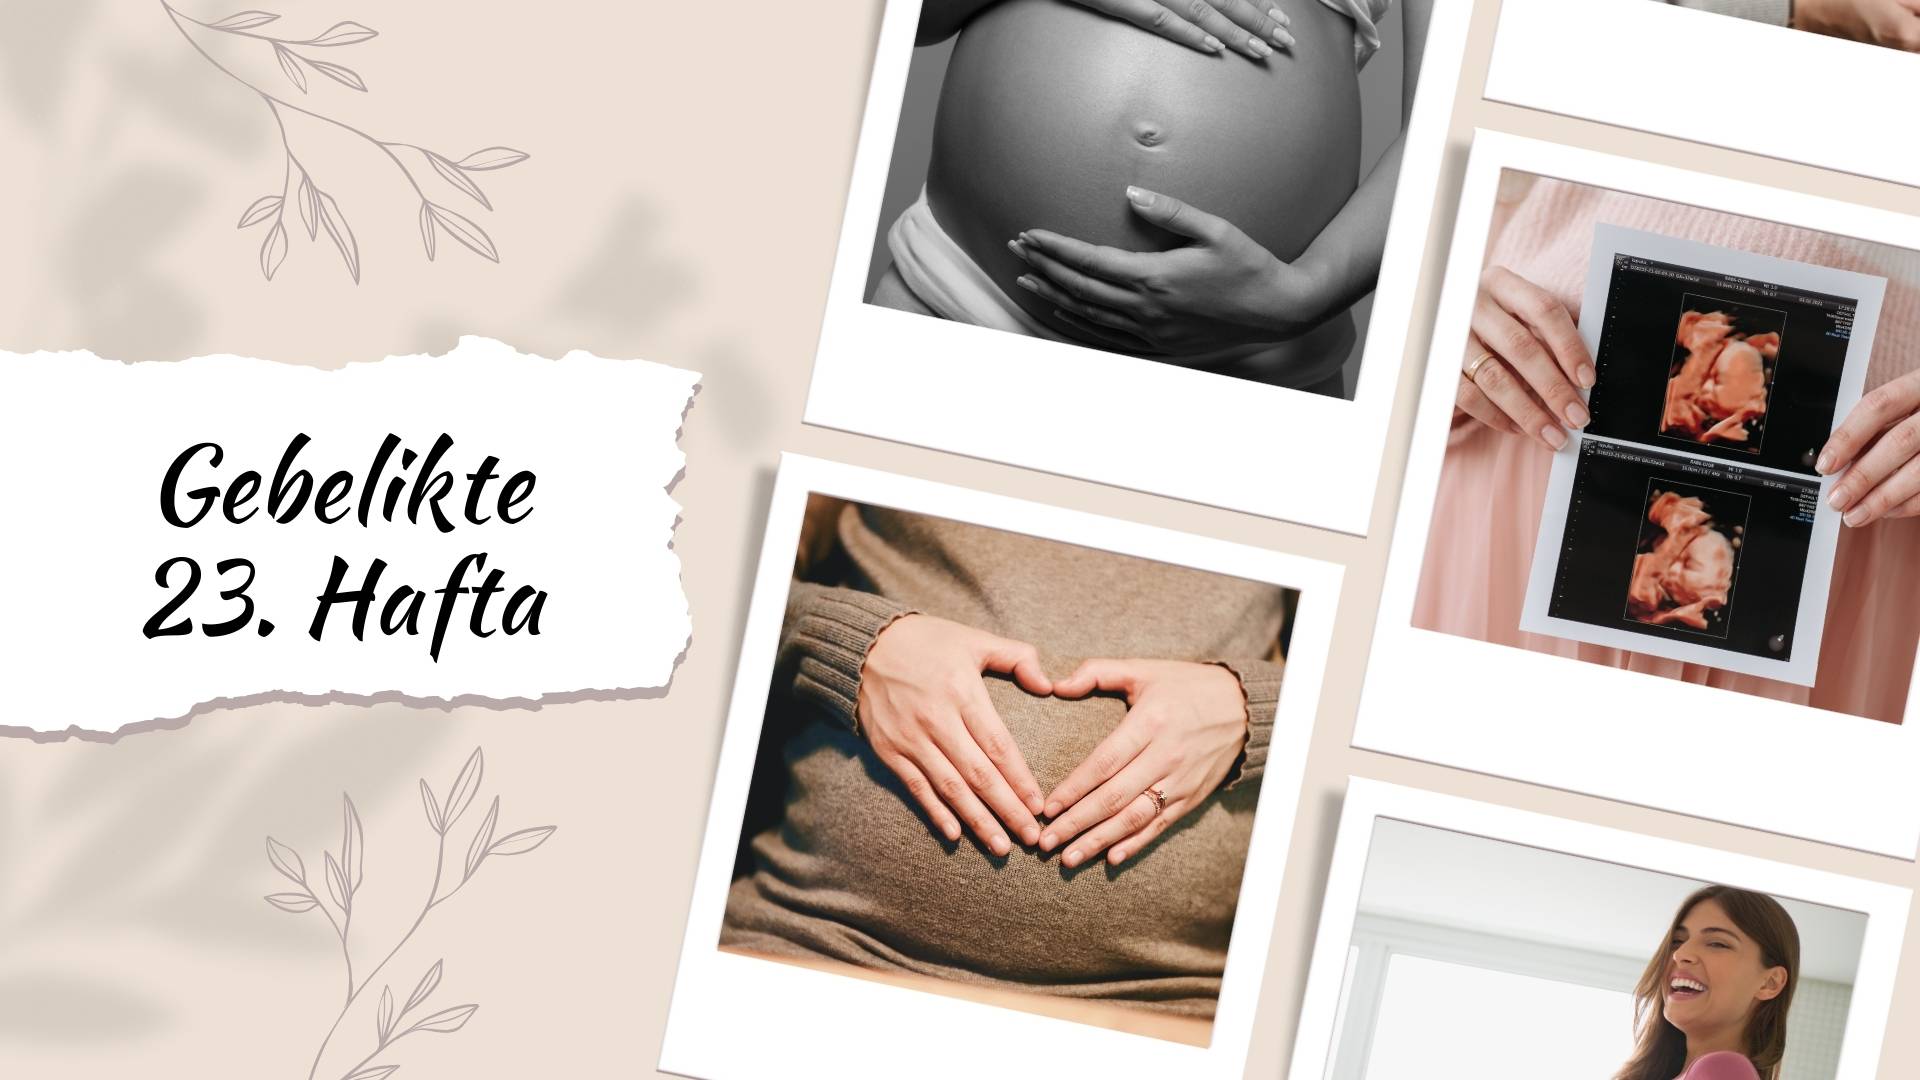 Hamilelikte 23. hafta gebelikte bebeğin gelişimi, annenin değişen bedeni, beslenme önerileri, egzersizler, olası semptomlar, bebeğin cinsiyetinin tesbiti ve önemli kontroller hakkında bilgi edinin.